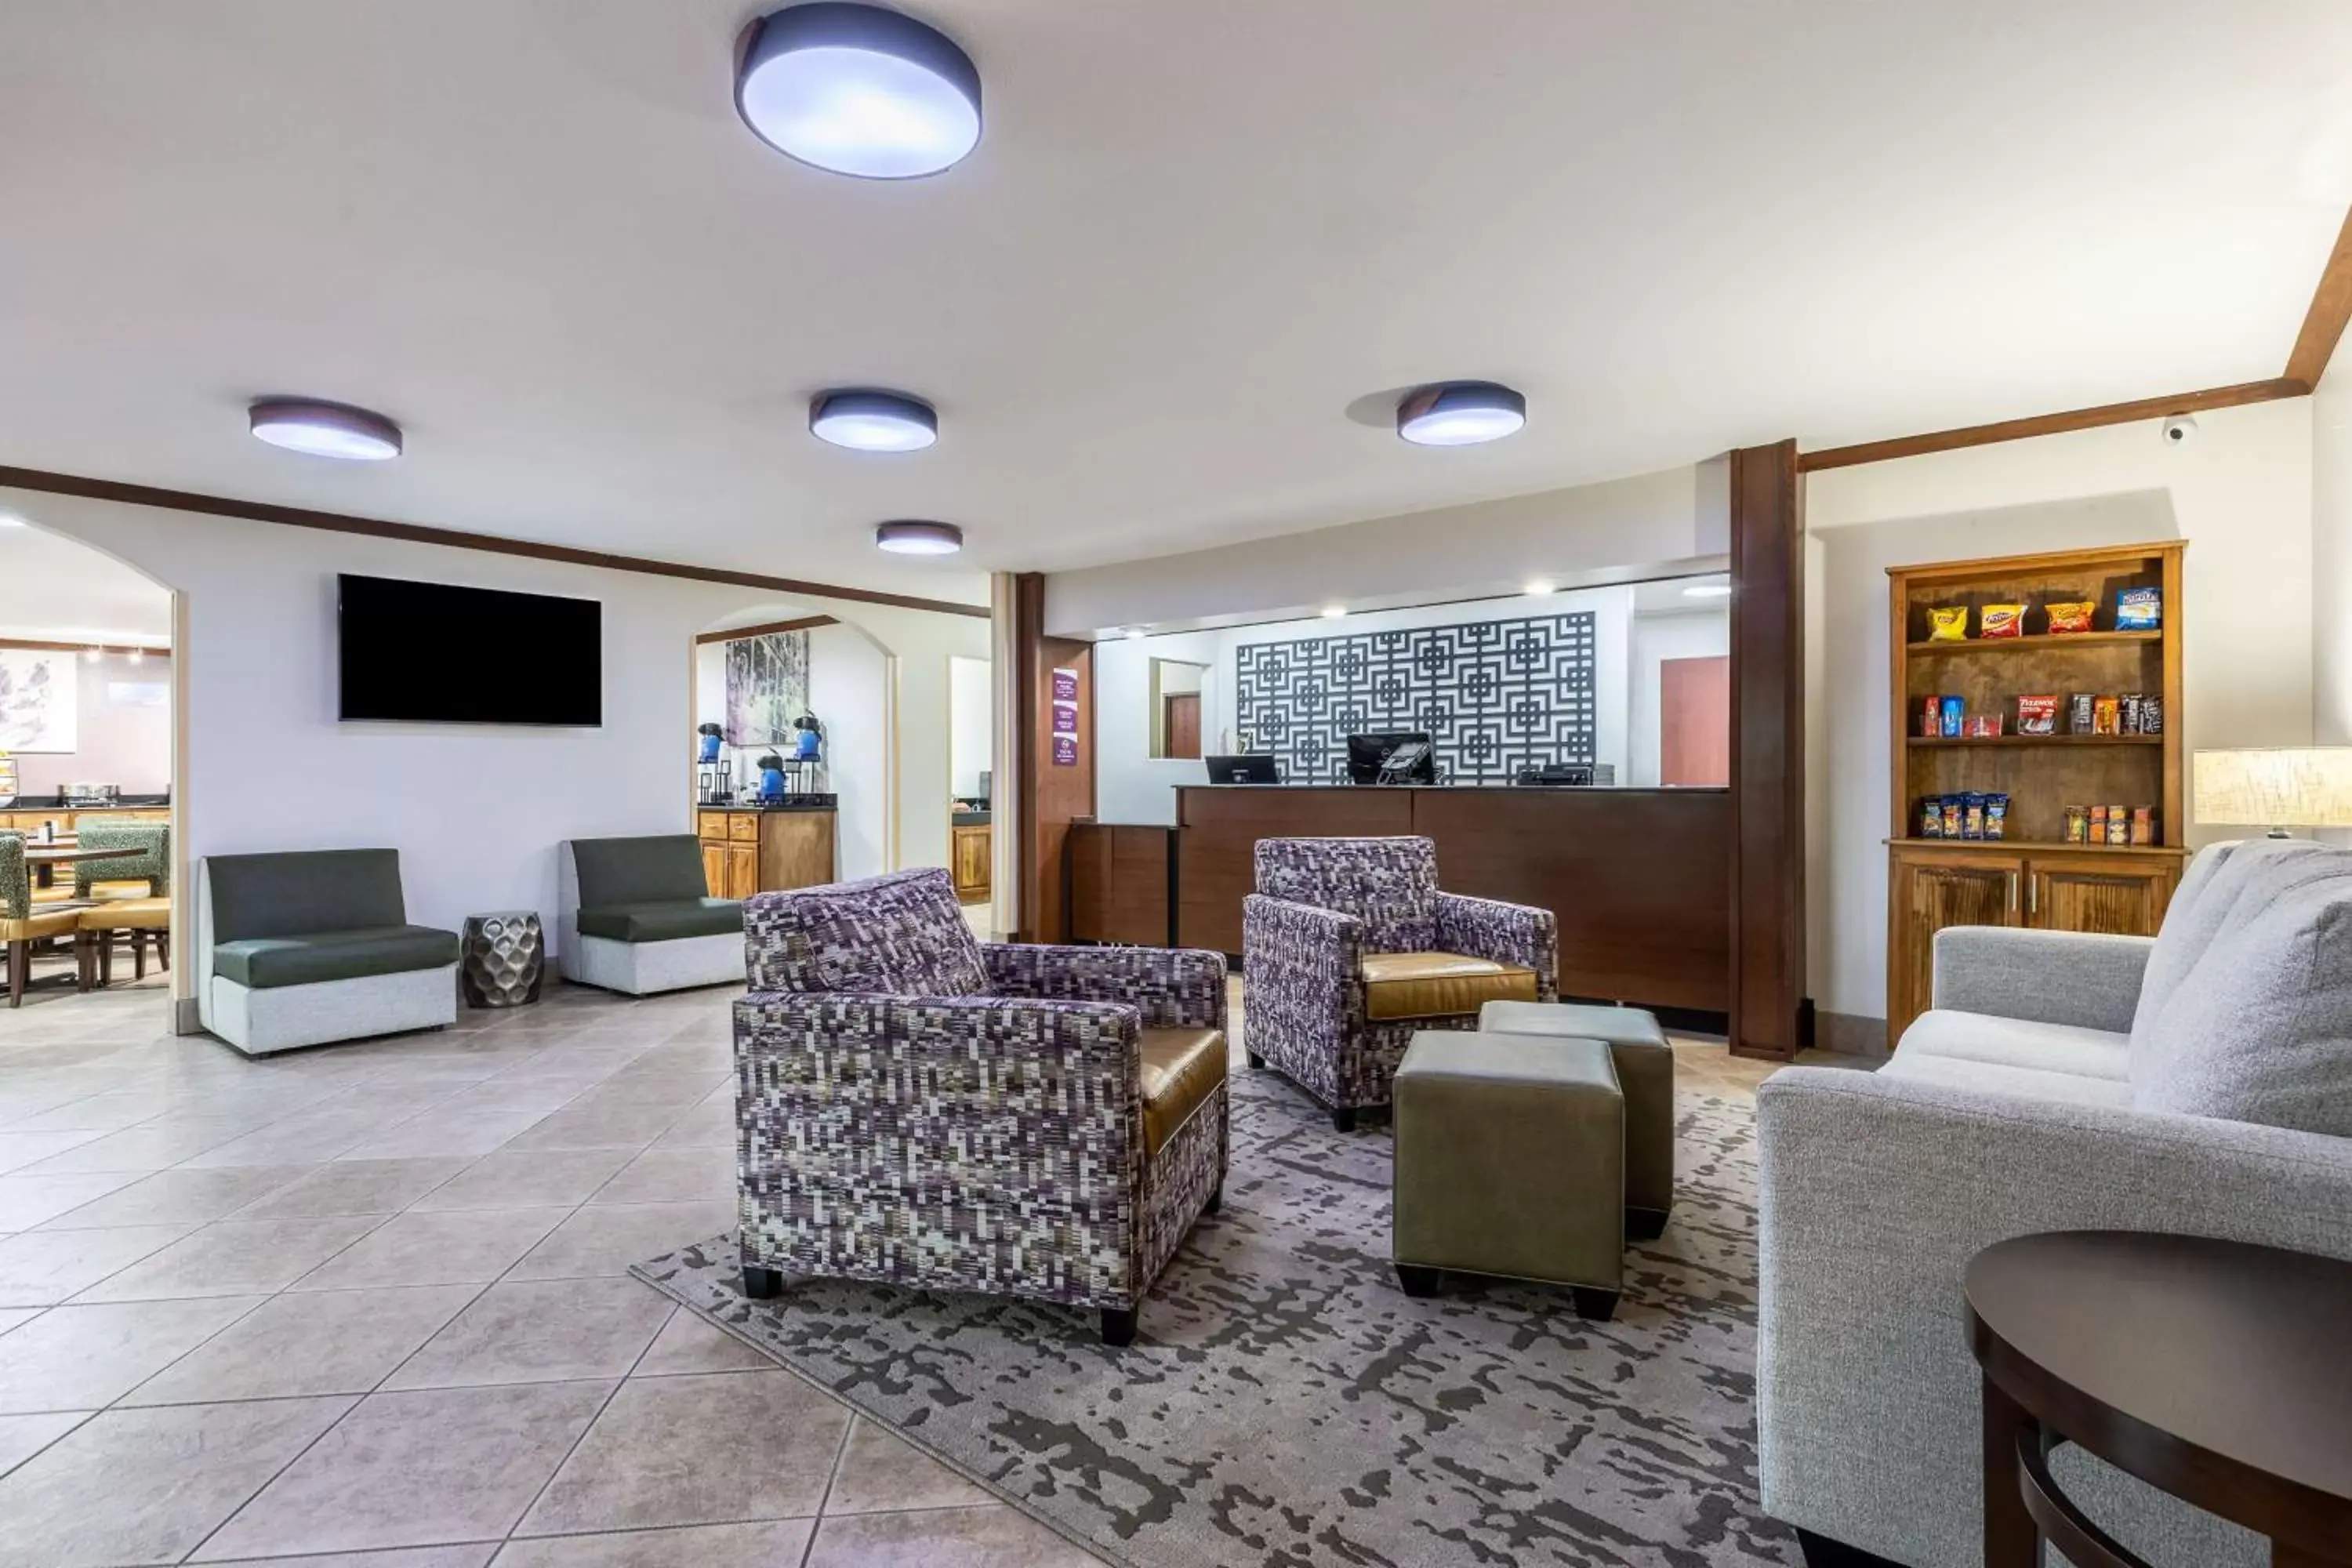 Lobby or reception, Lobby/Reception in Best Western Morgan City Inn